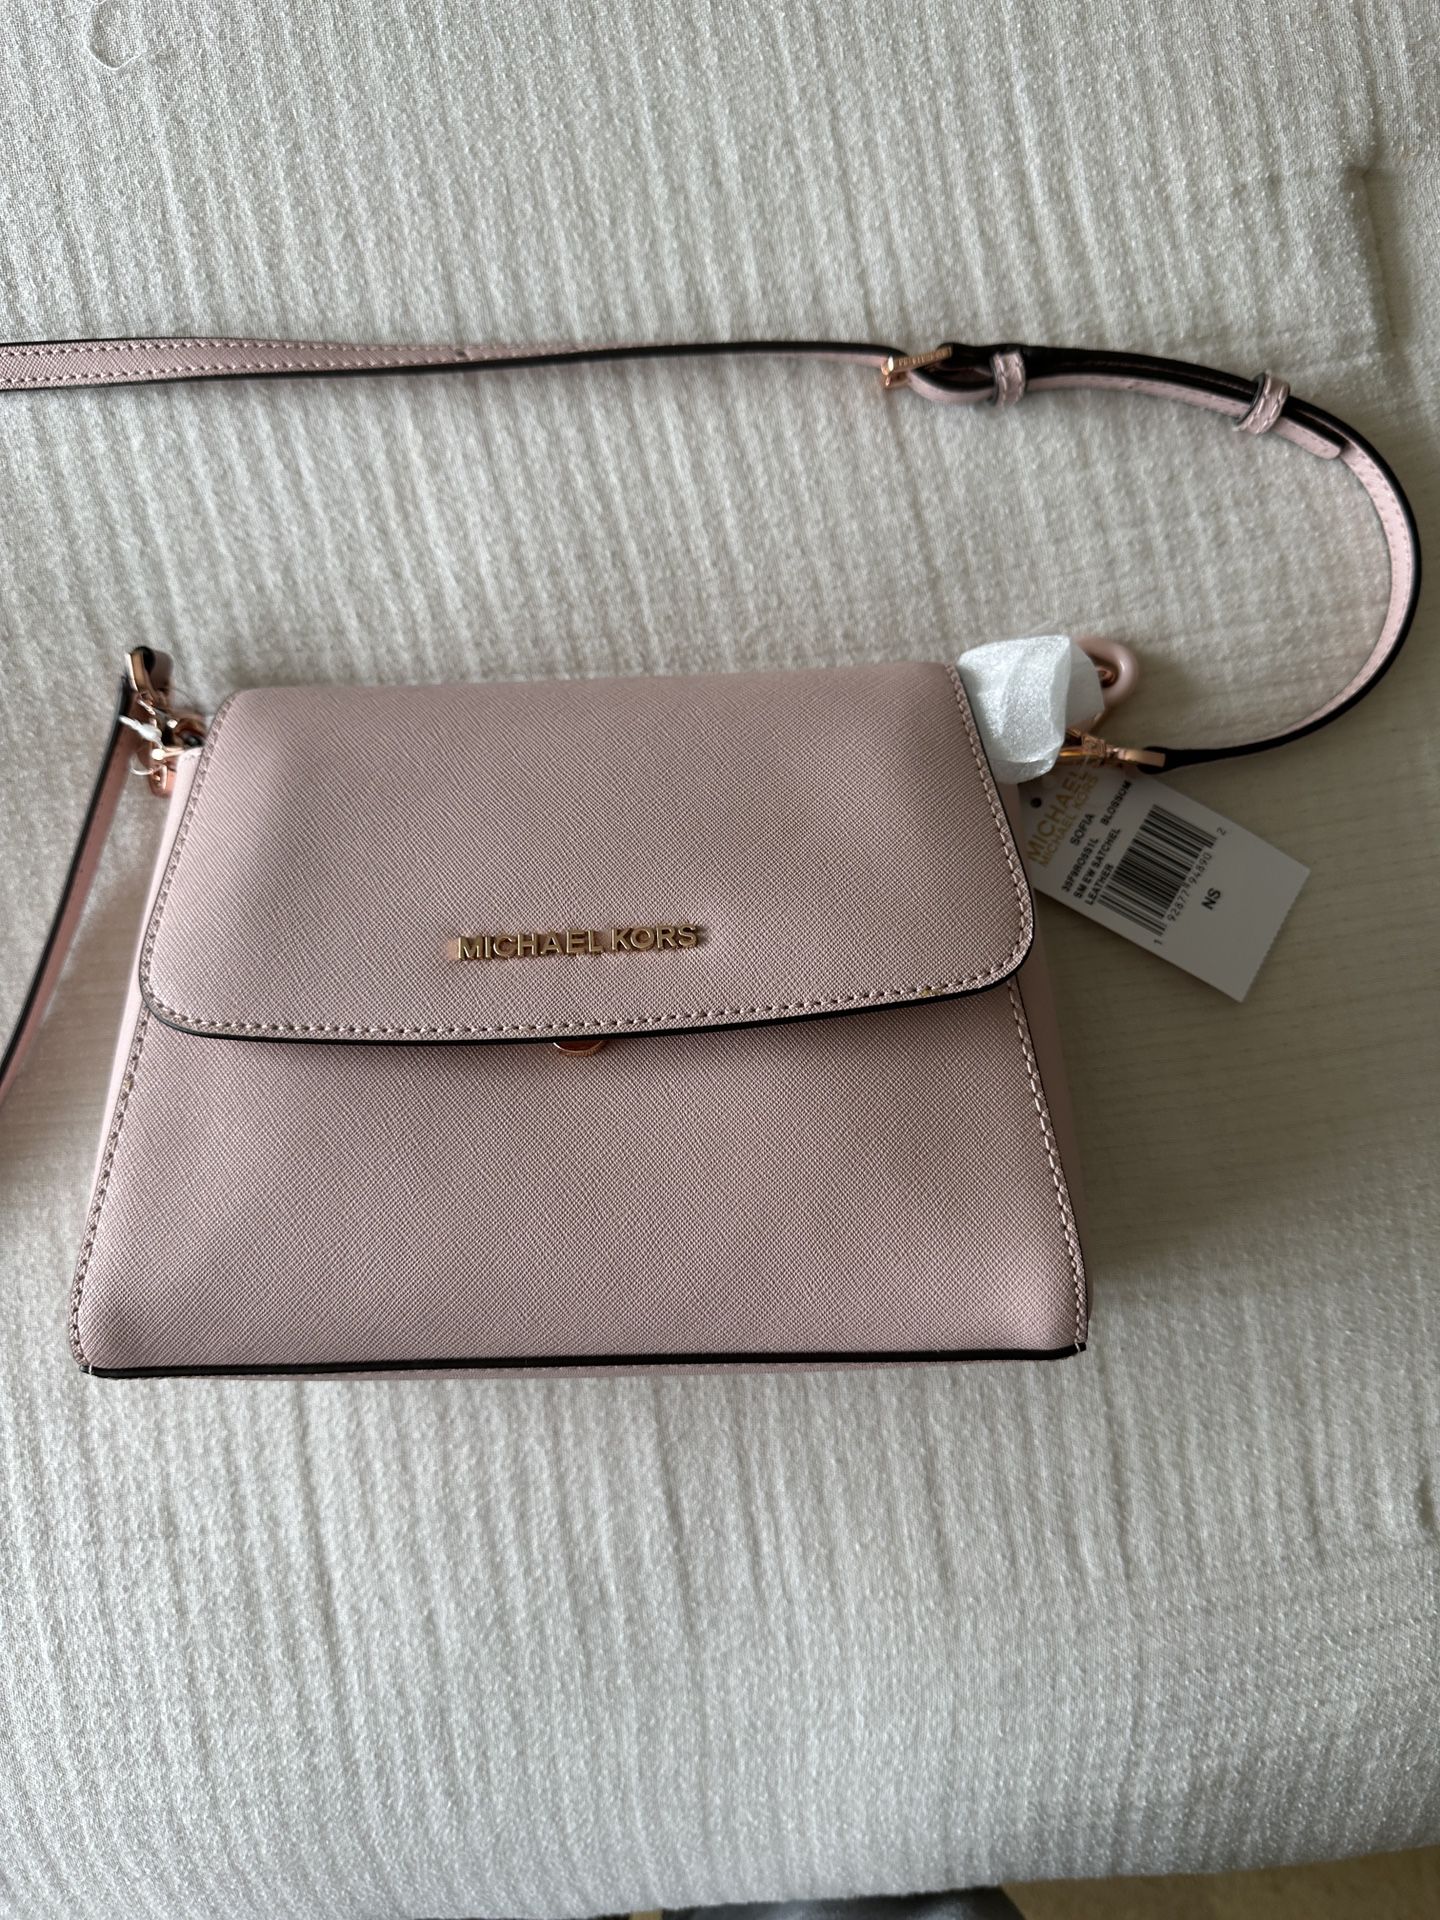 MICHAEL KORS Sofia Pink Leather Bag